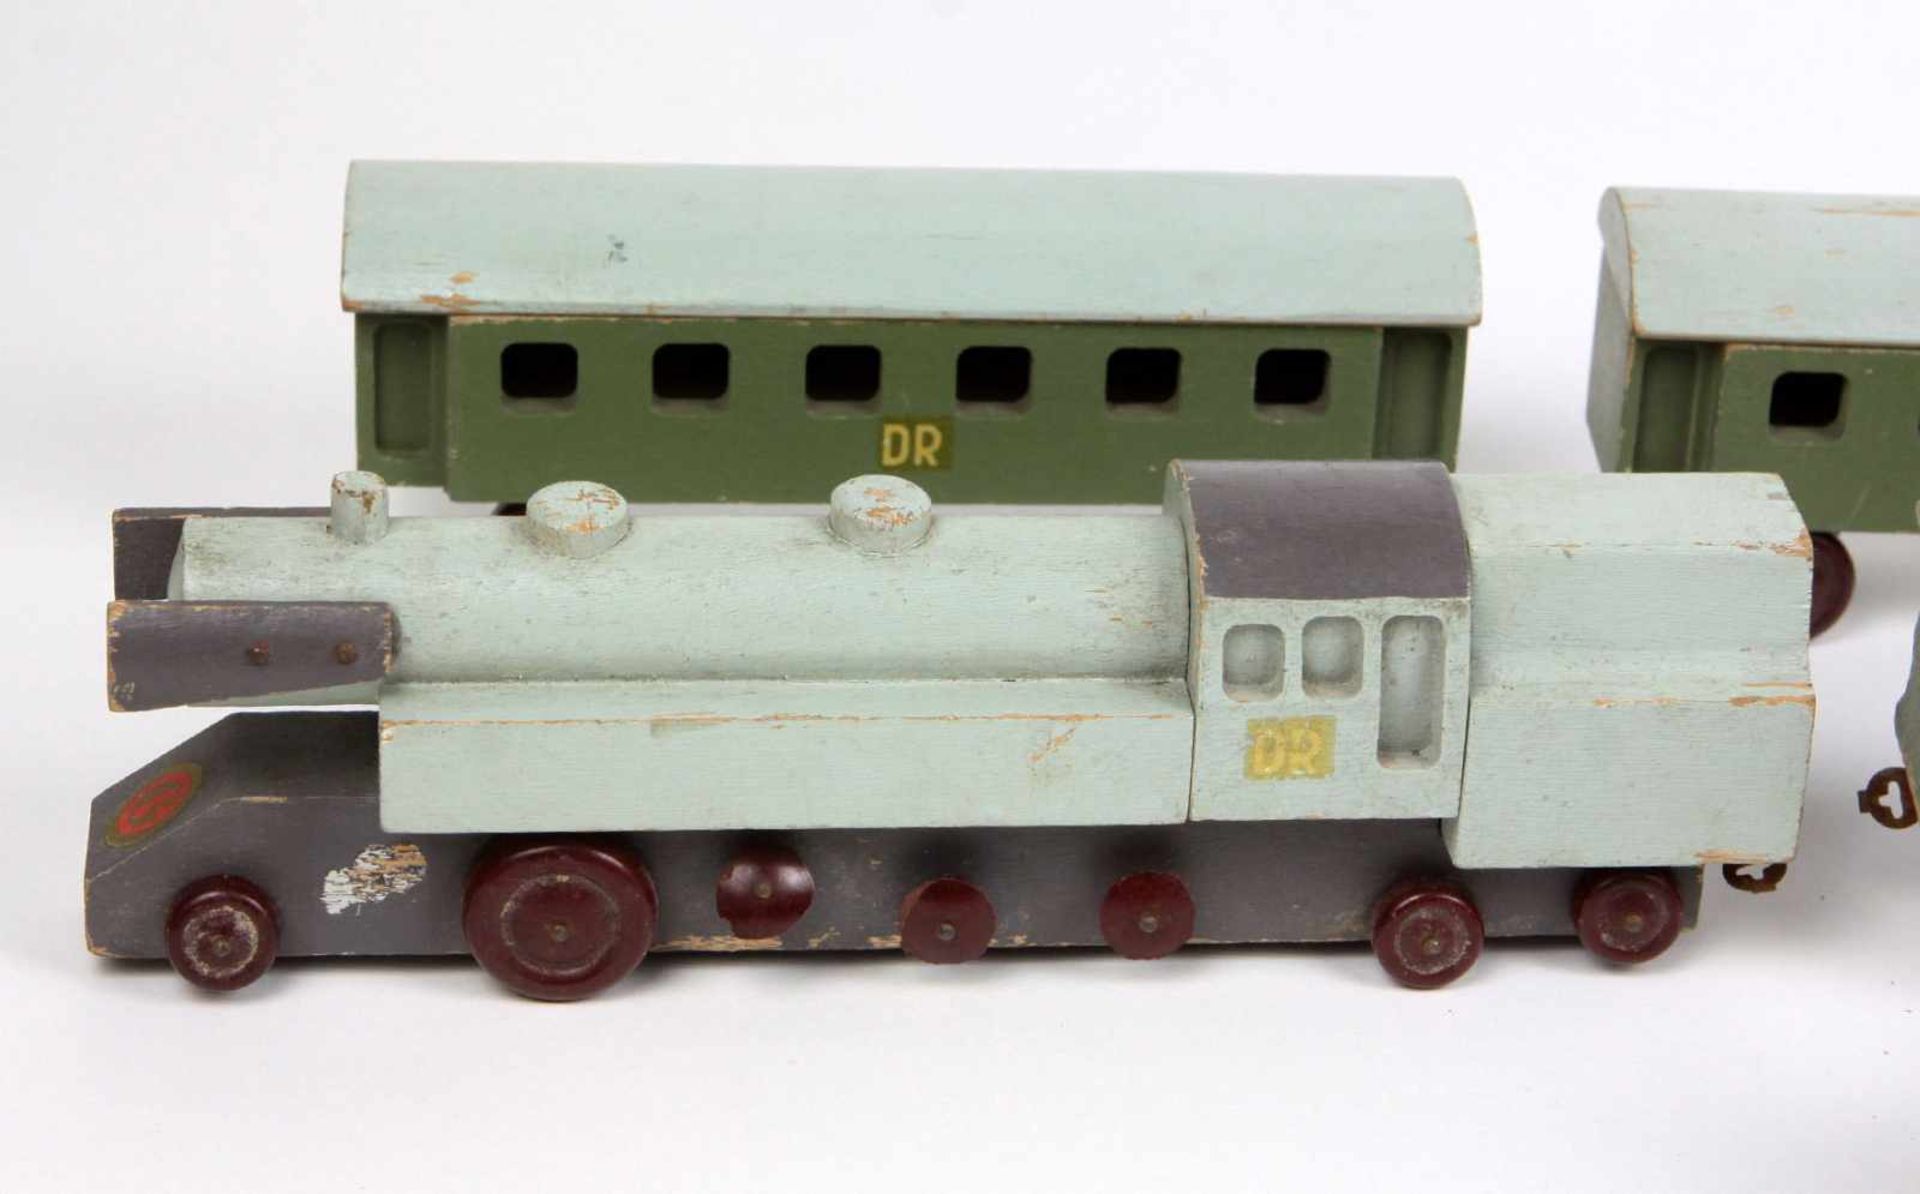 HolzeisenbahnHolz grün u. grau lackiert, Lokomotive mit 3 Personen- u. einem Gepäckwagen, Wagen je - Bild 2 aus 2